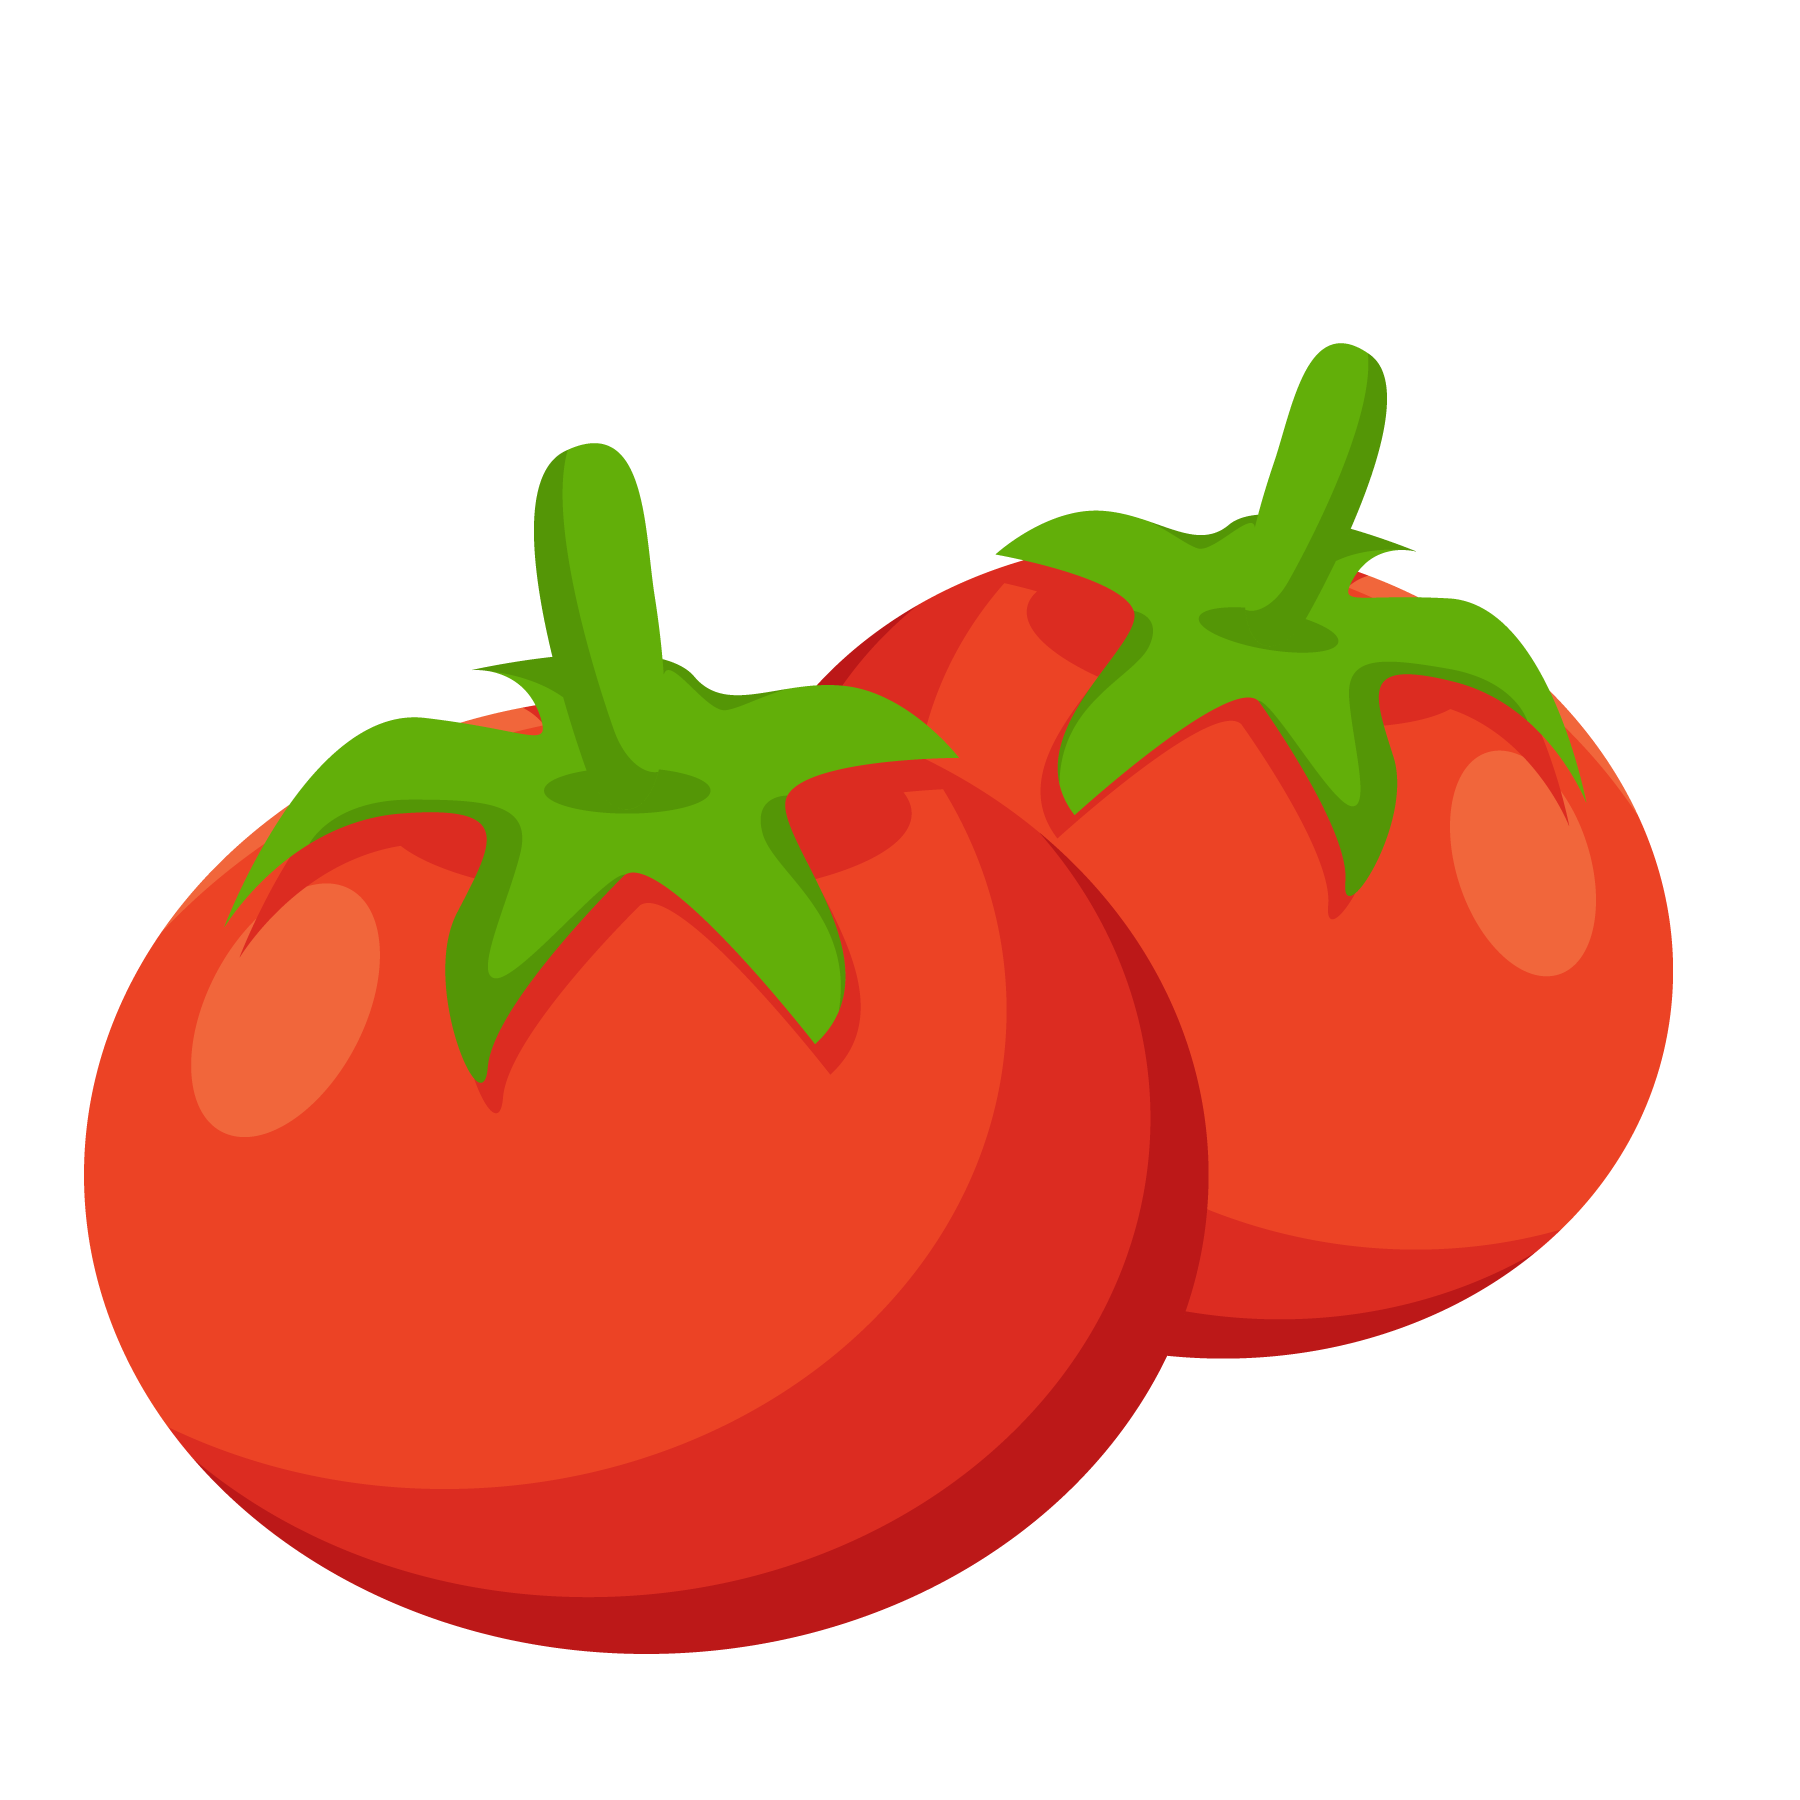 一对卡通红色西红柿农作物手绘矢量素材